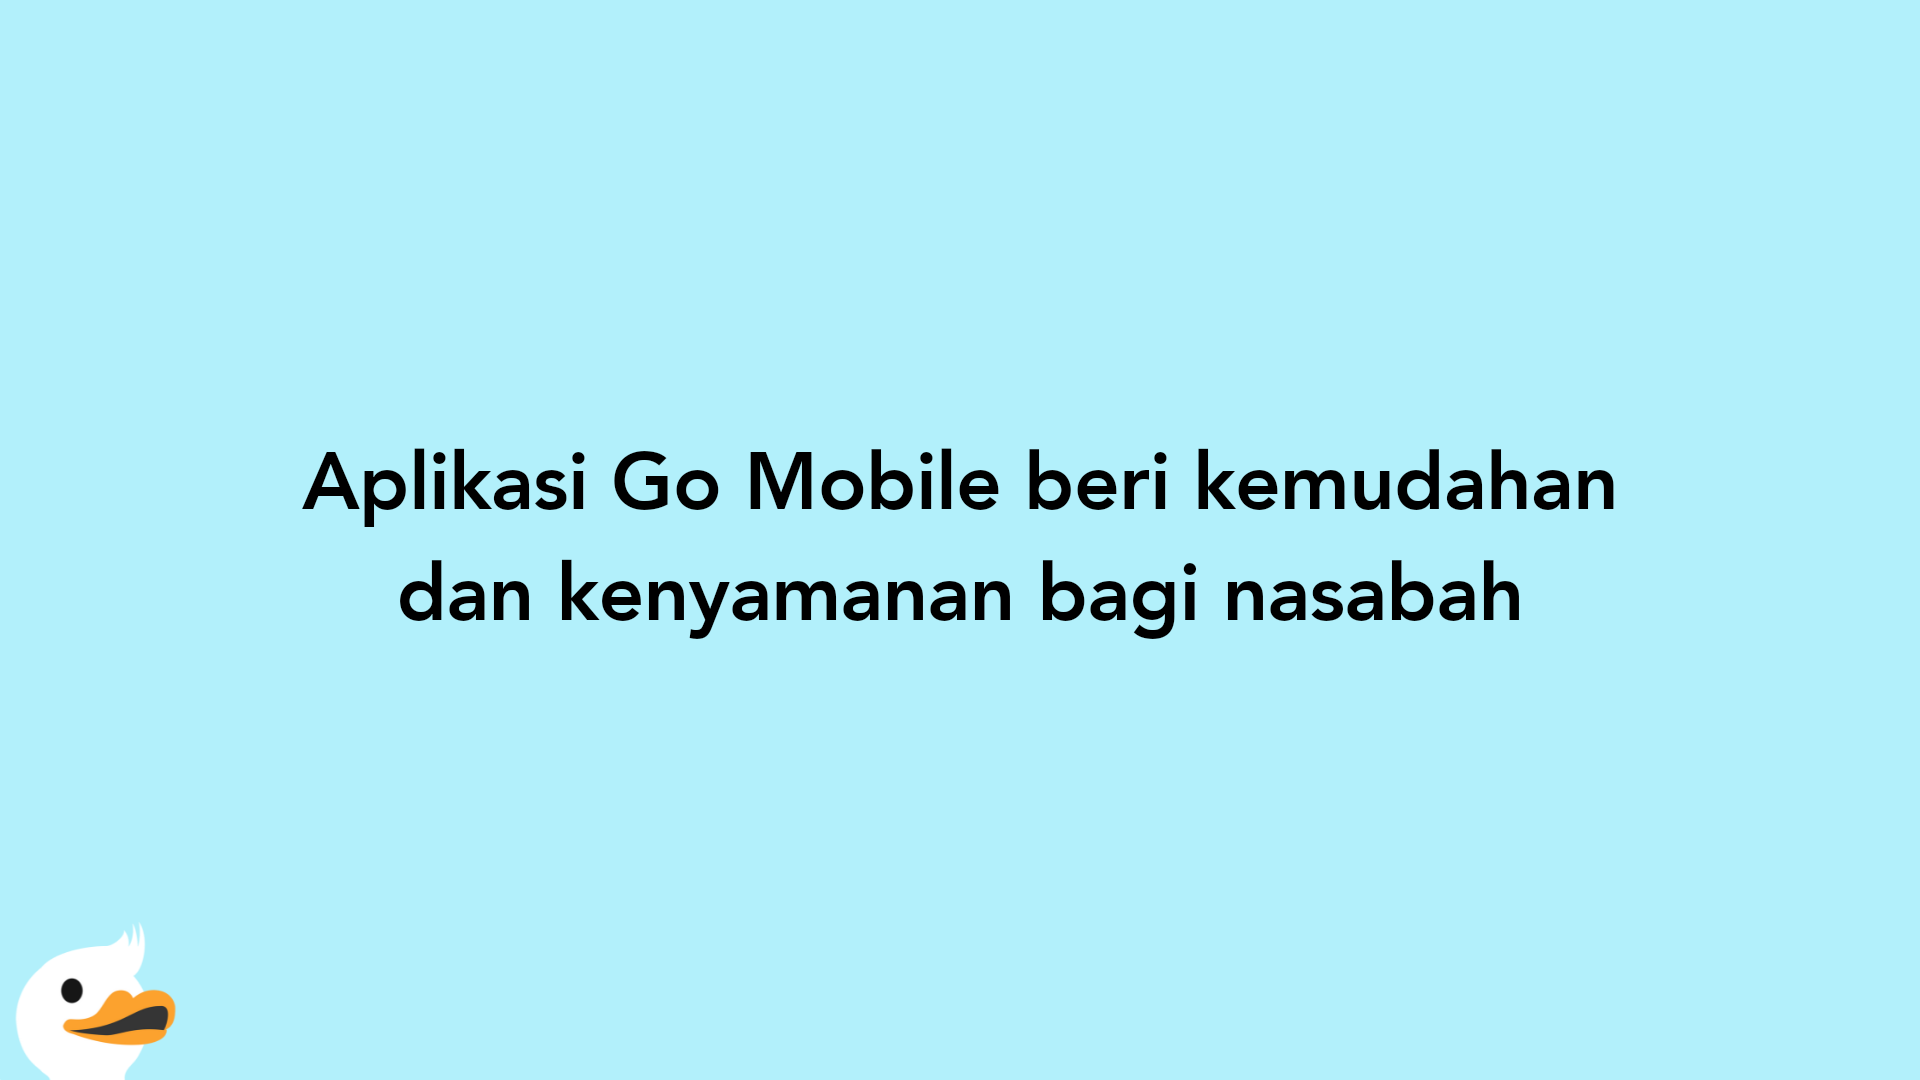 Aplikasi Go Mobile beri kemudahan dan kenyamanan bagi nasabah